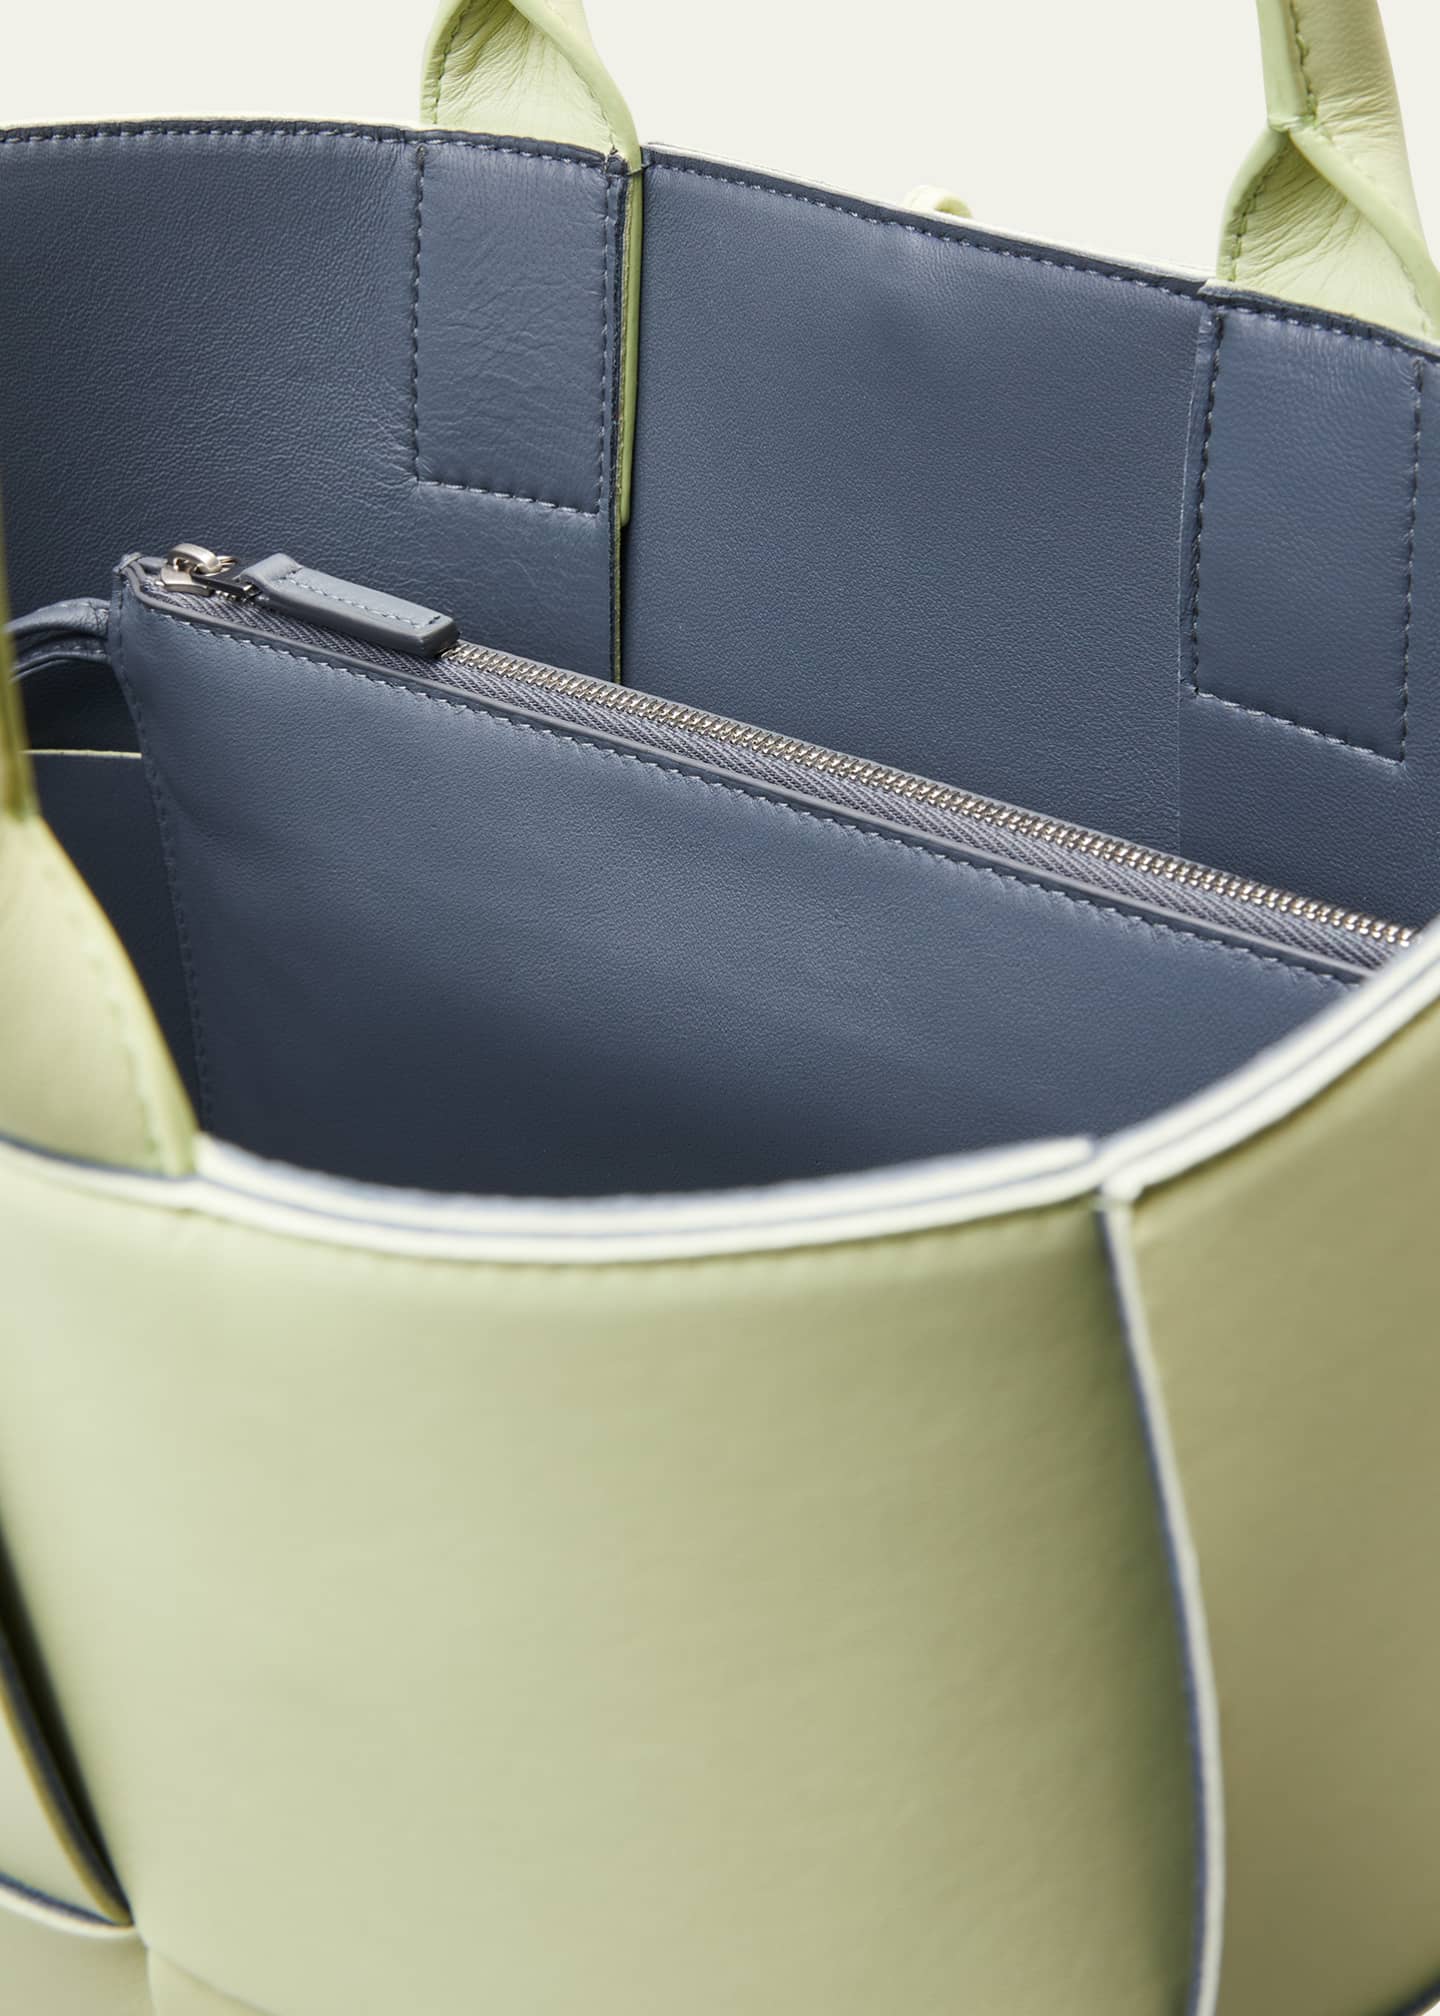 Arco small Intrecciato-leather tote bag